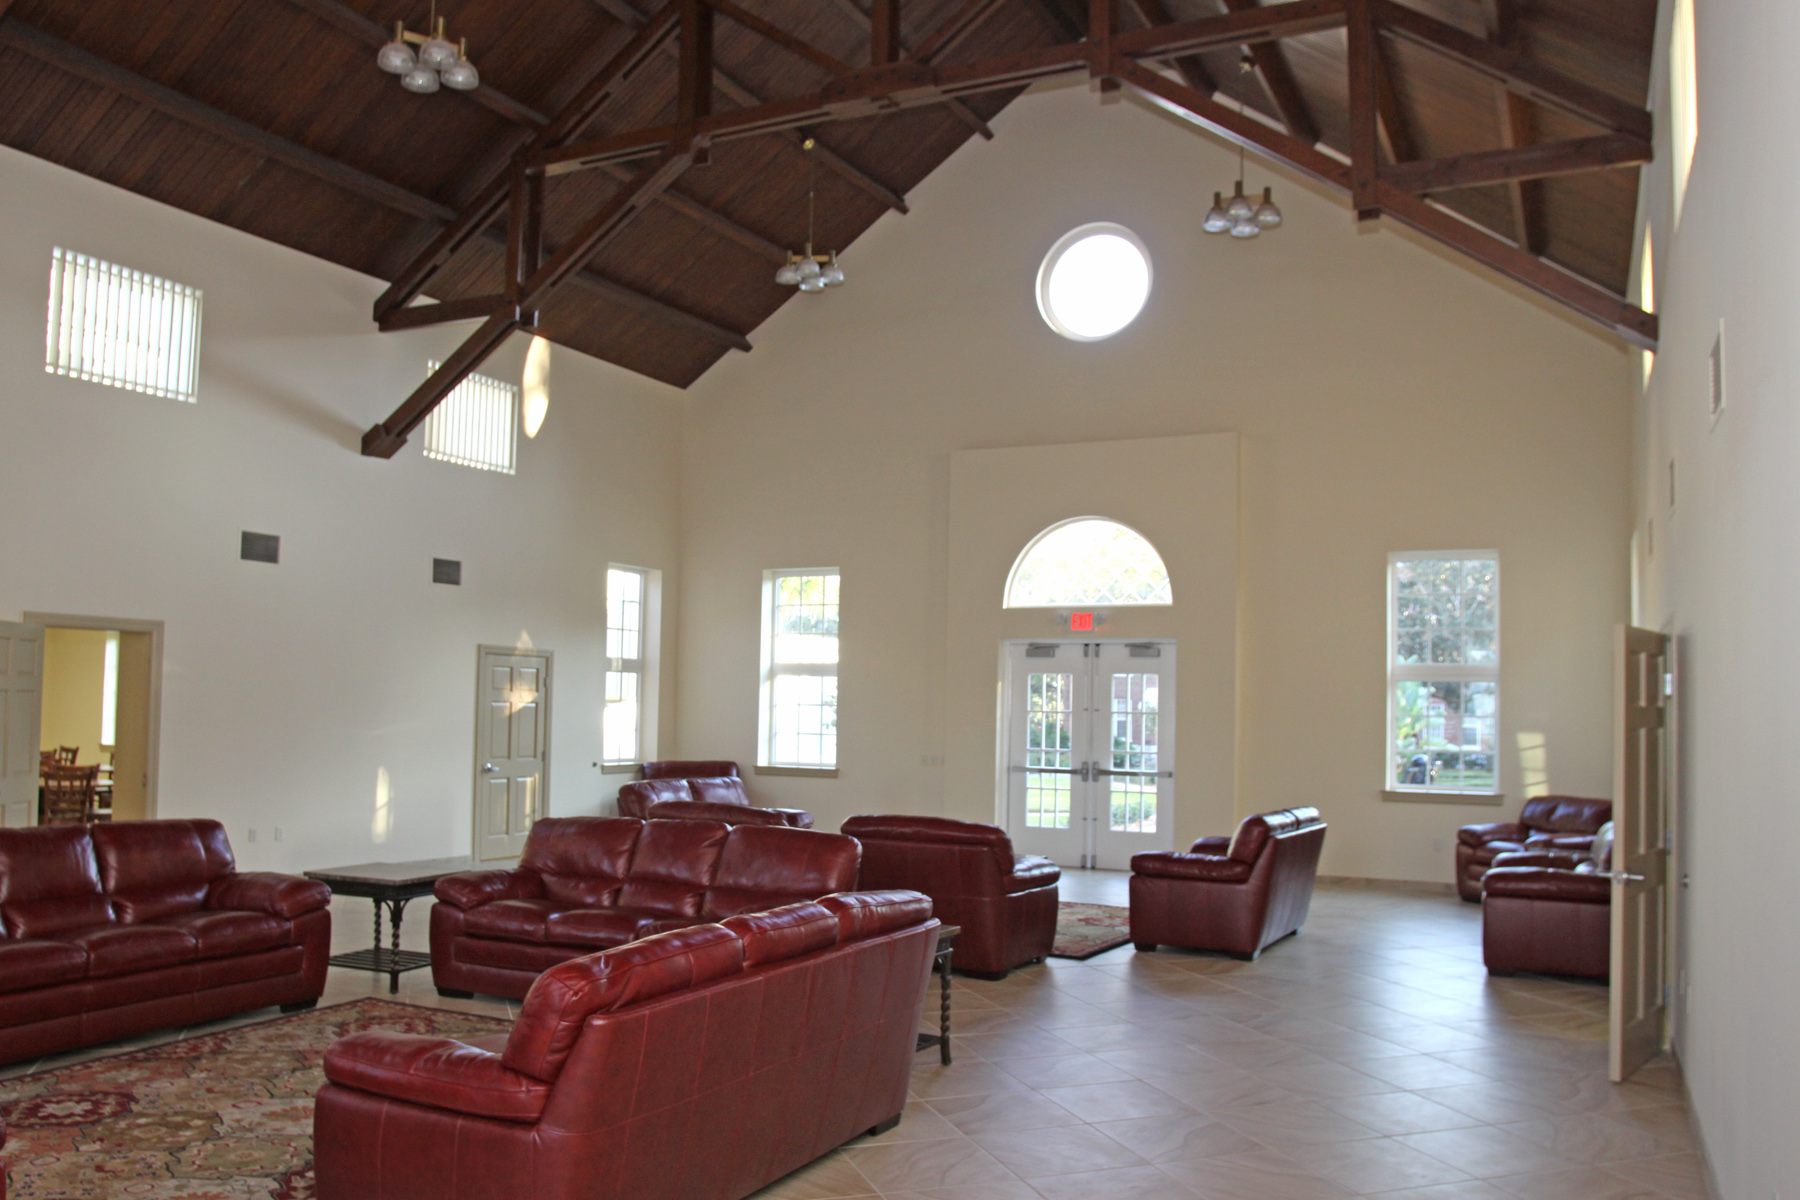 Fannin Center interior